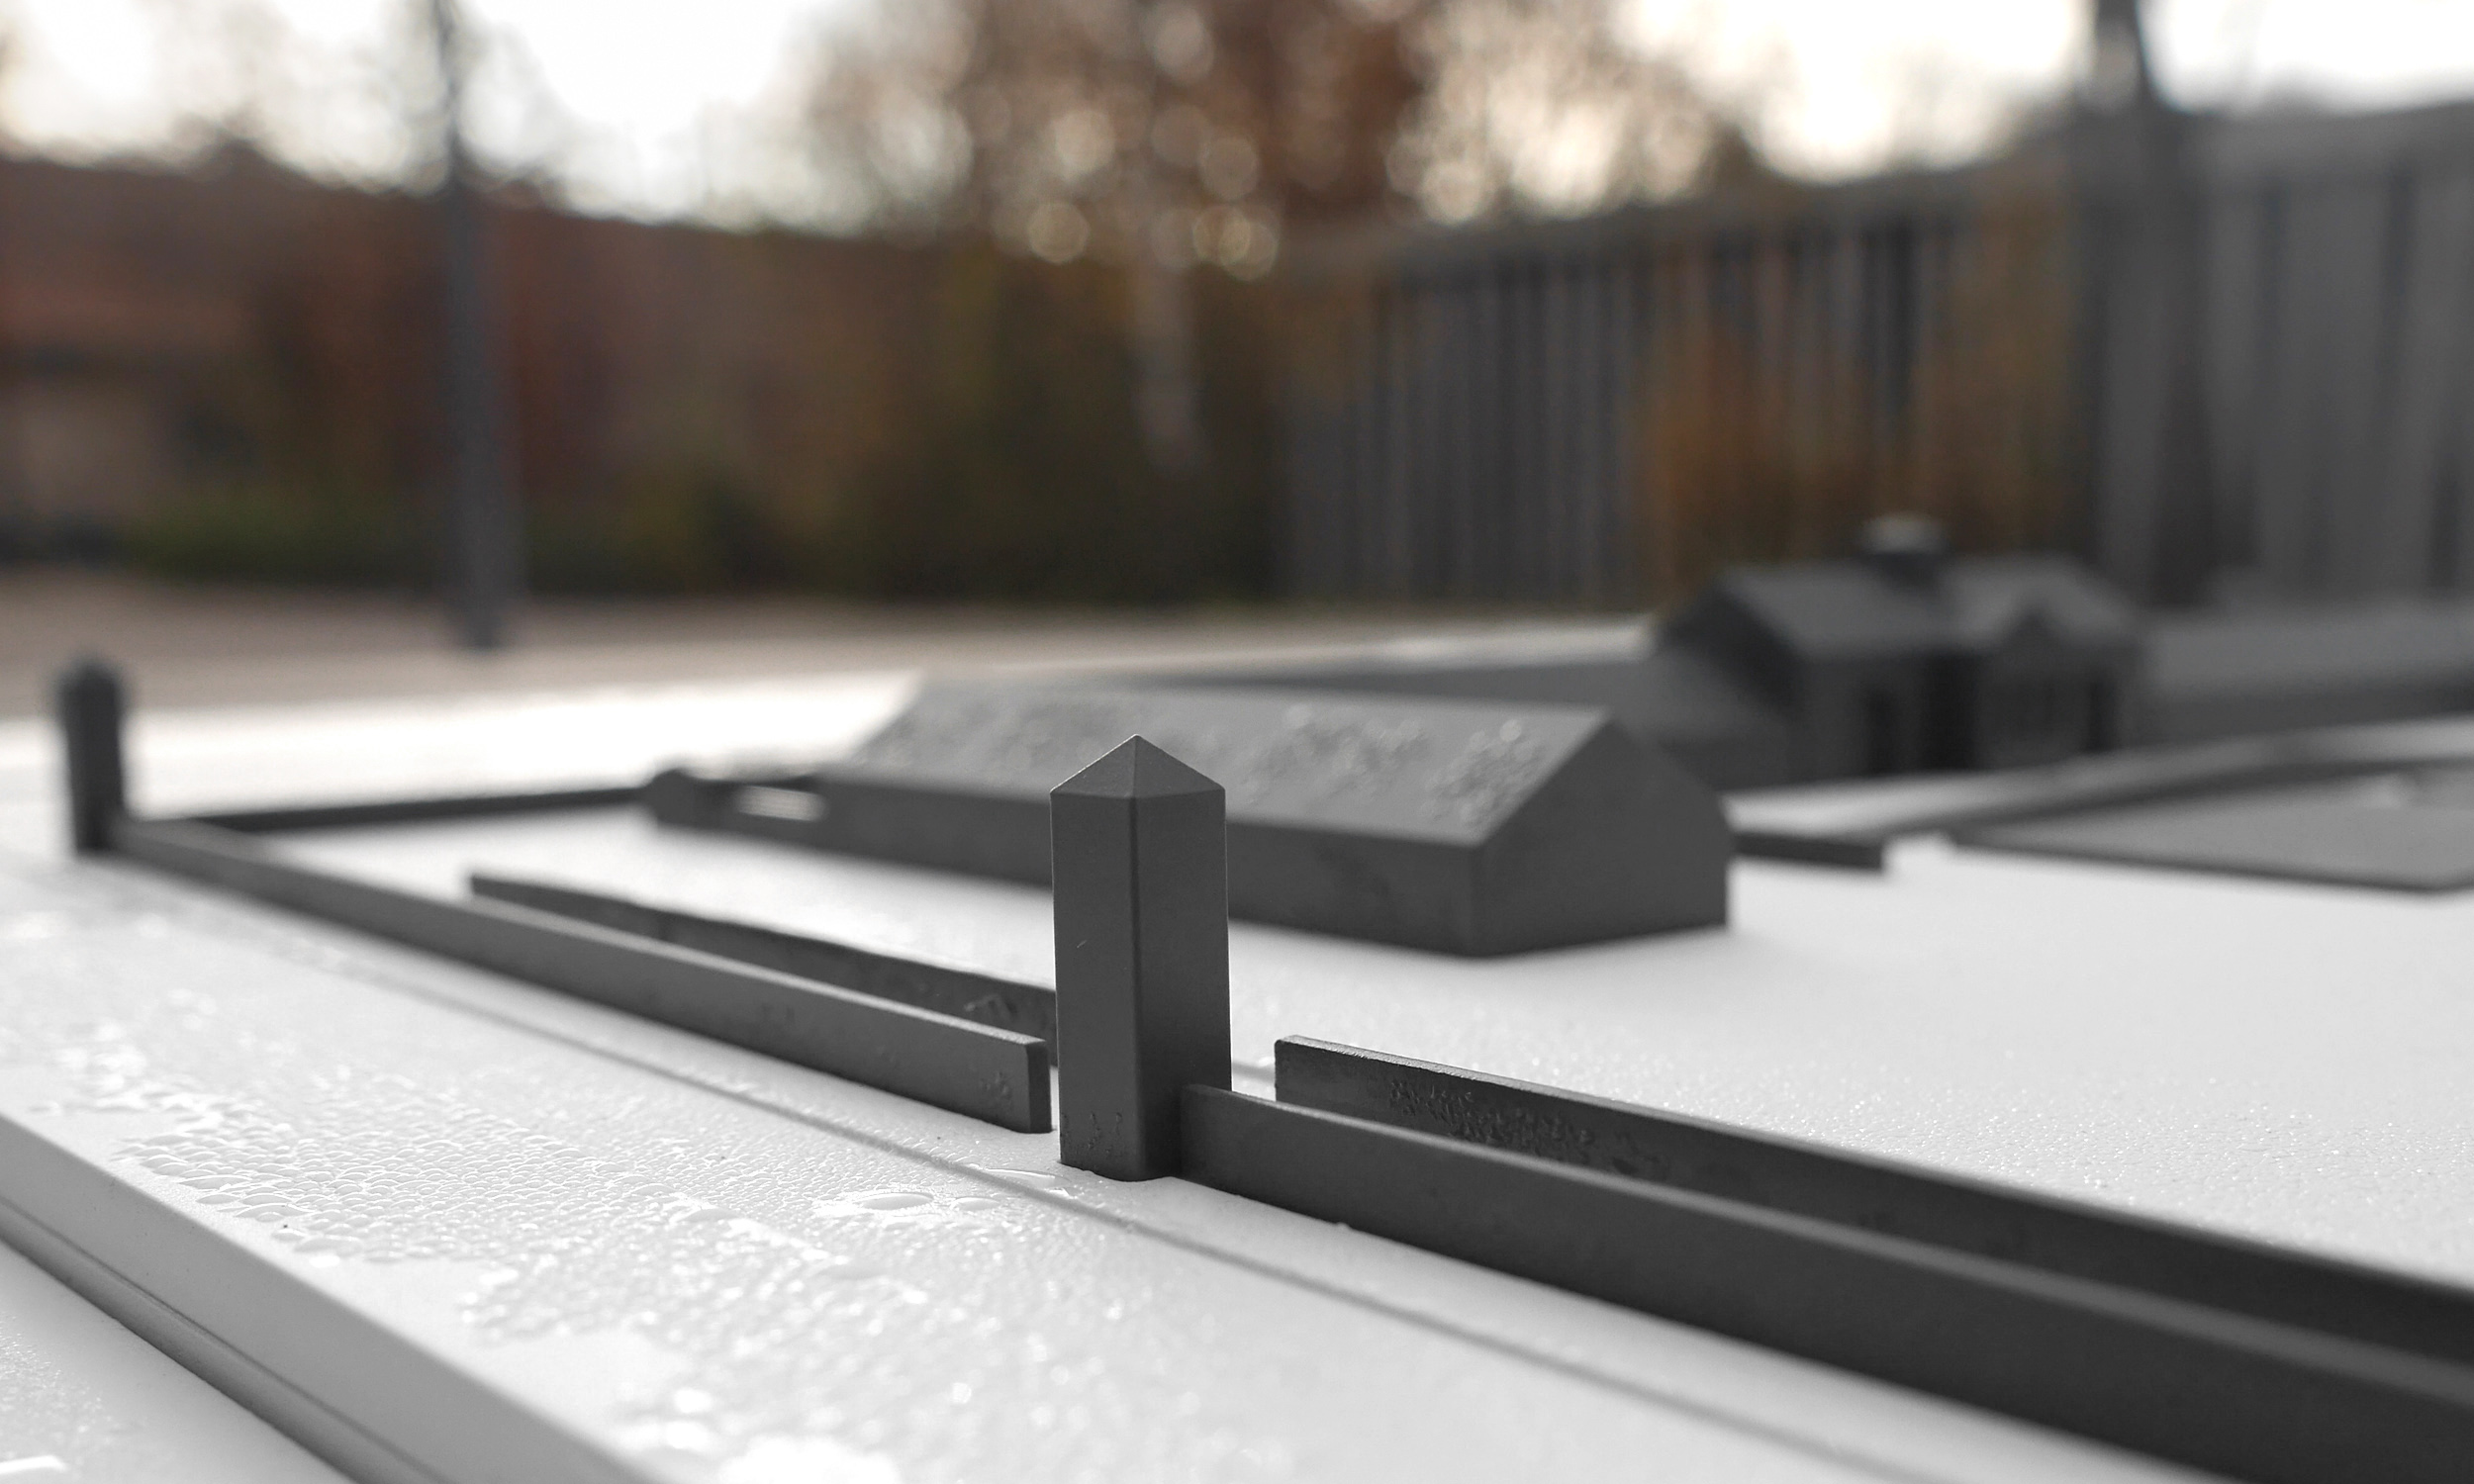 Detailfoto eines Tastmodells mit sich im Vordergrund befindlichen Wachtürmen des KZ